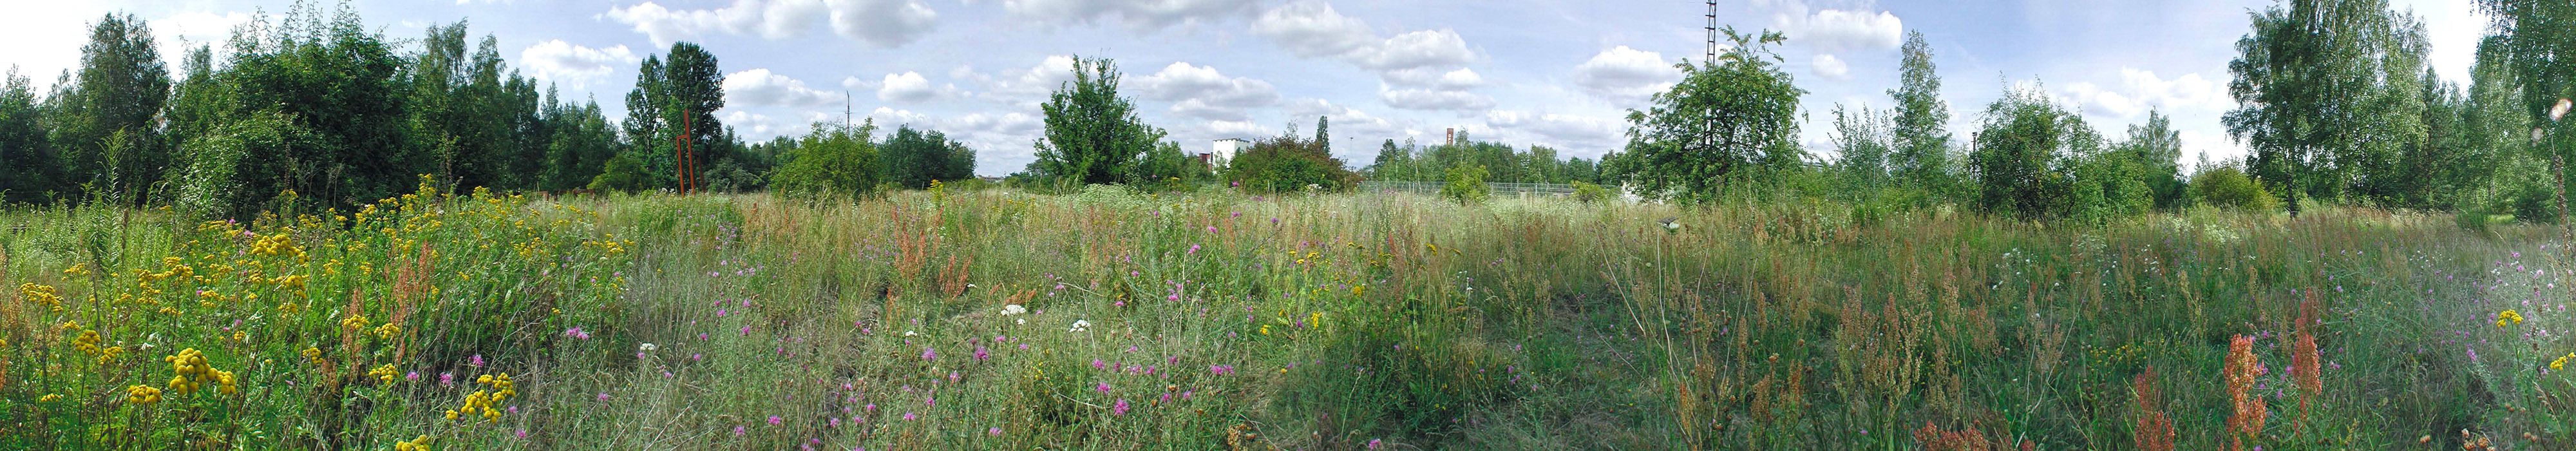 Bildvergrößerung: Ein 360-Grad-Panorama zeigt eine ausgedehnte Wiese mit hohen Gräsern, umgeben von dichten Büschen und vereinzelten Bäumen. Etwa in der Mitte sichert ein Zaun die angrenzende Bahntrasse. Dahinter ragen einzelne Gebäude und Masten auf. Im Vordergrund dominieren farbige Blüten die Offenfläche. Ein dichter Teppich halbhoher gelber Blütenkörbchen - links im Bild - geht über in einen Abschnitt mit violetten Blüten und weißer, schirmförmiger Schafgarbe. Daran schließen sich Kräuter und Gräser mit bräunlichen Blüten- und Samenständen an.